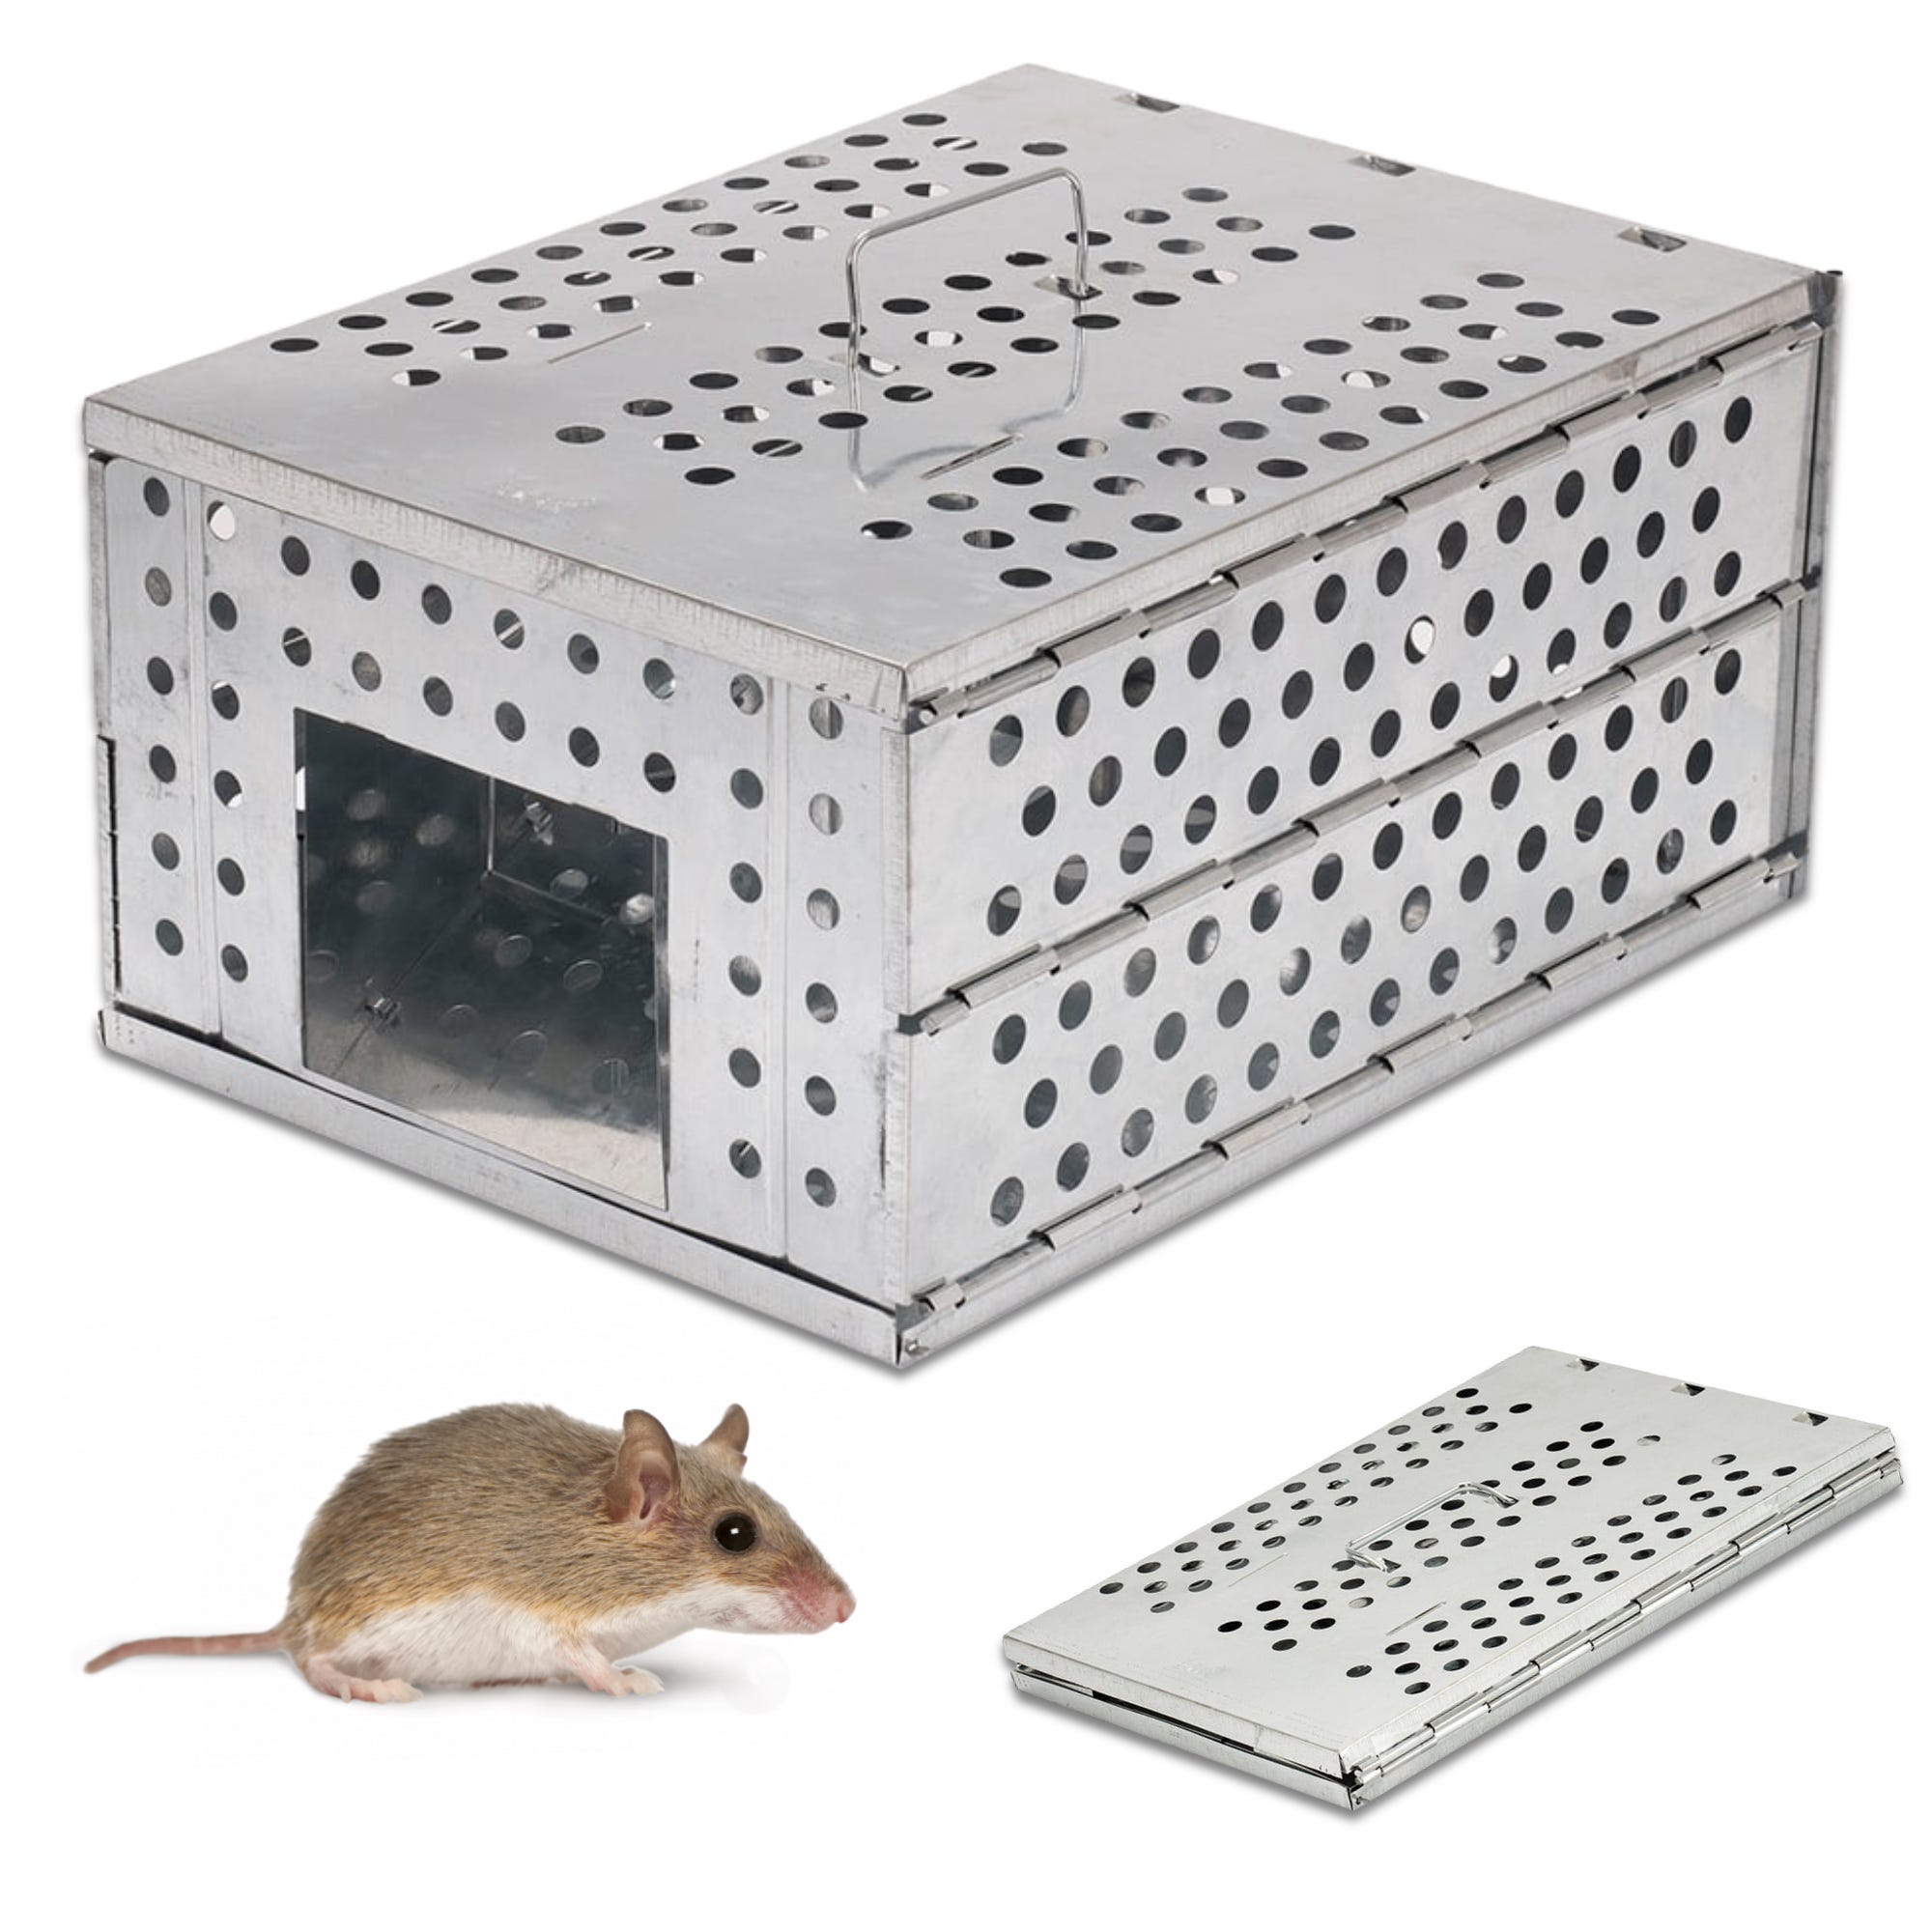 Trappola per ratti topi roditori gabbia di plastica confezione da 2 unità  60 x 170 x 64 mm - Cablematic